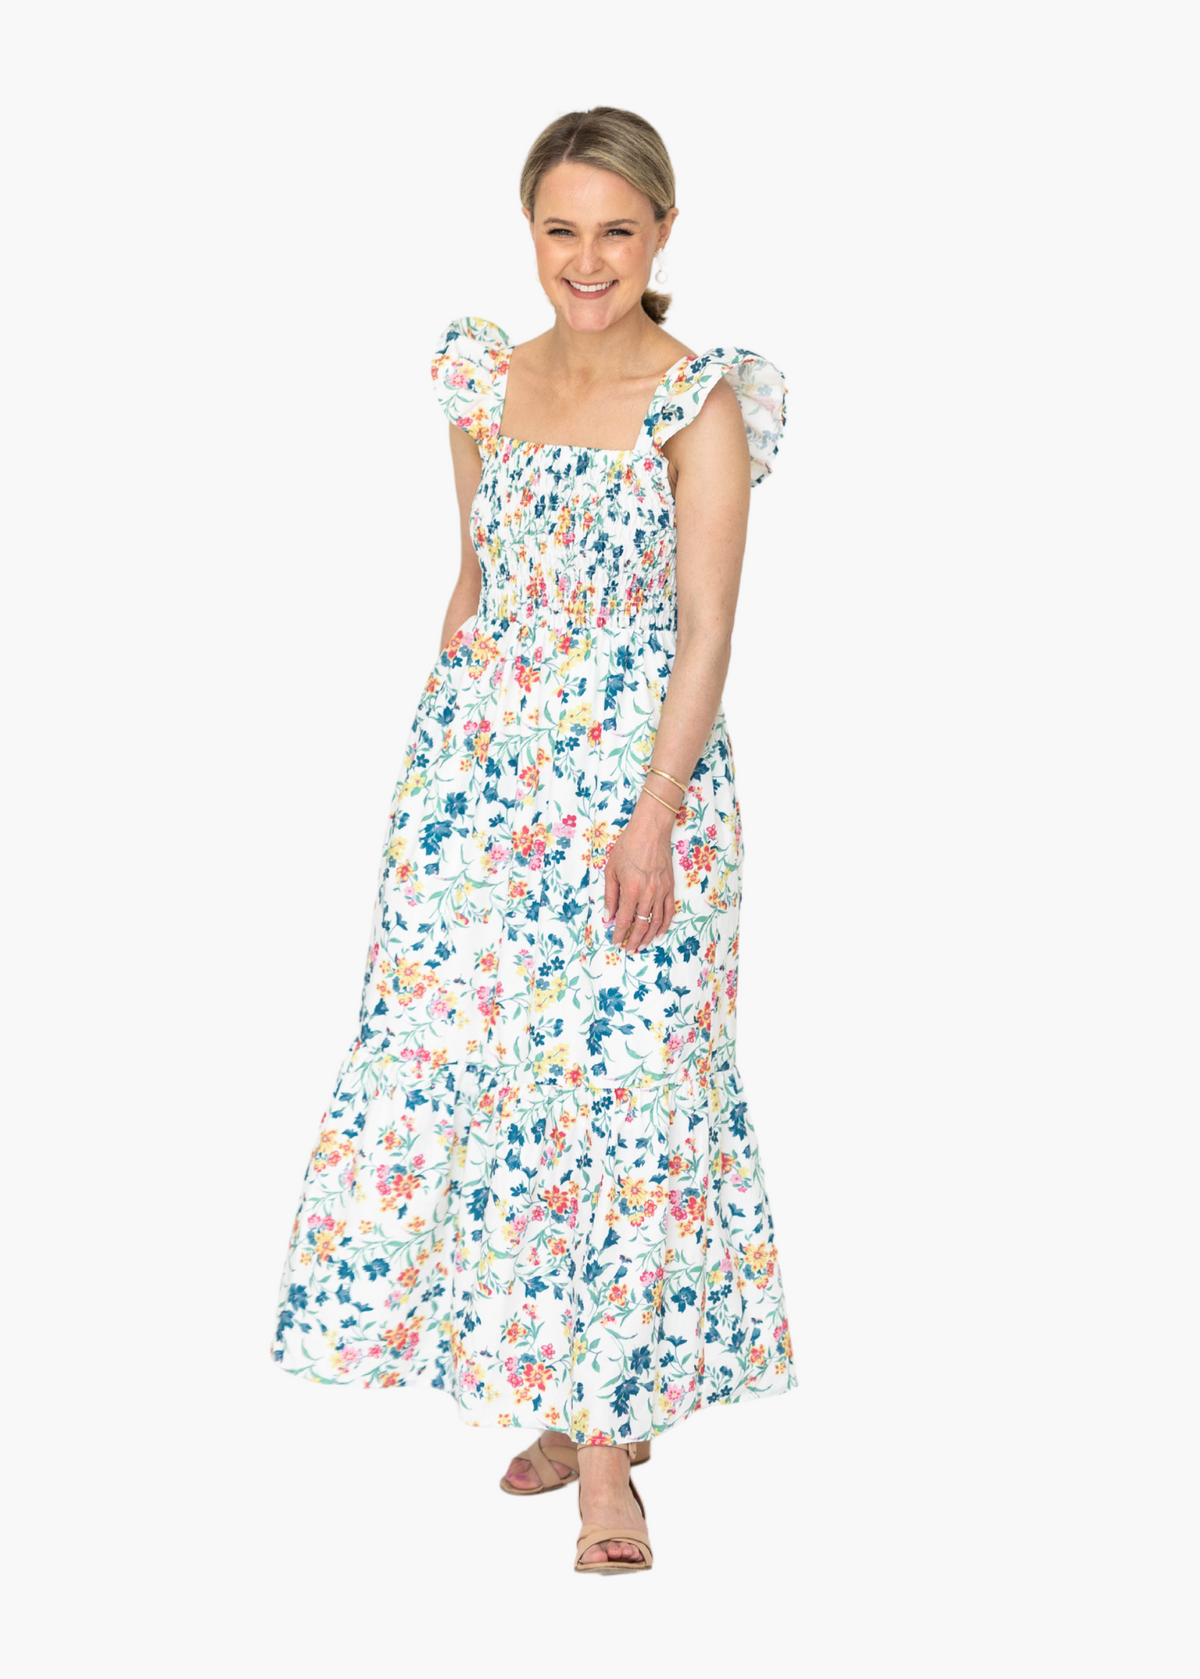 Millie Floral Smocked Dress